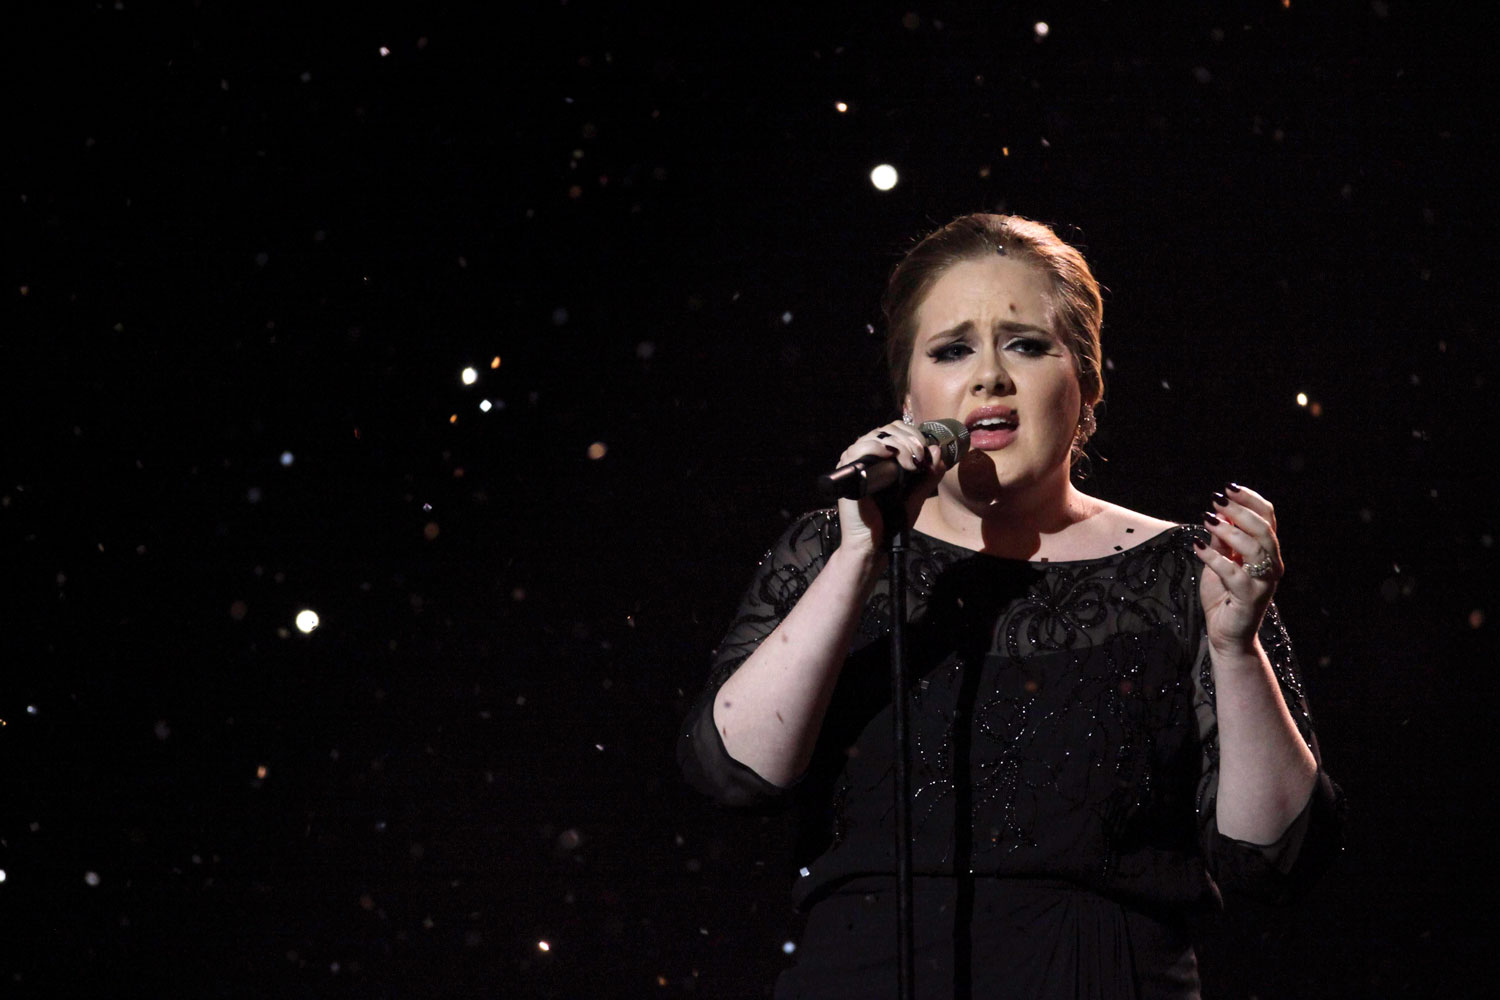 http://1.bp.blogspot.com/-33EIY4tp1q0/TVxN09U3EgI/AAAAAAAAAu4/S826uYJKz8k/s1600/Adele+Brit+Awards+2011+Someone+Like+You.jpg